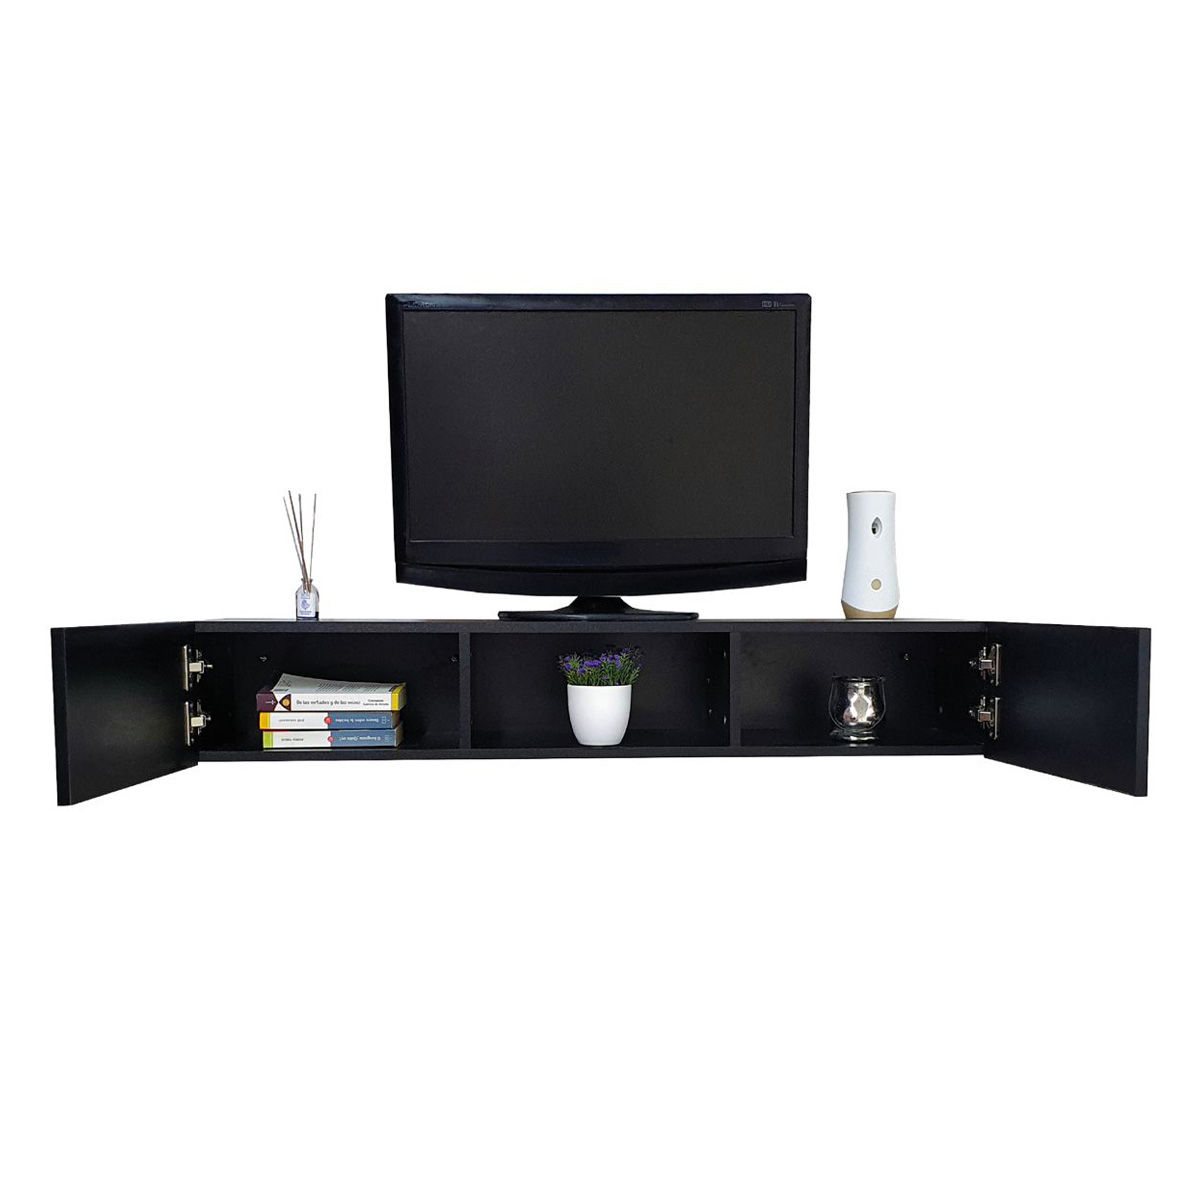 RoesselCodina Product: Peana TV PL2810-NEG con estante (110 cms de altura).  Negro.